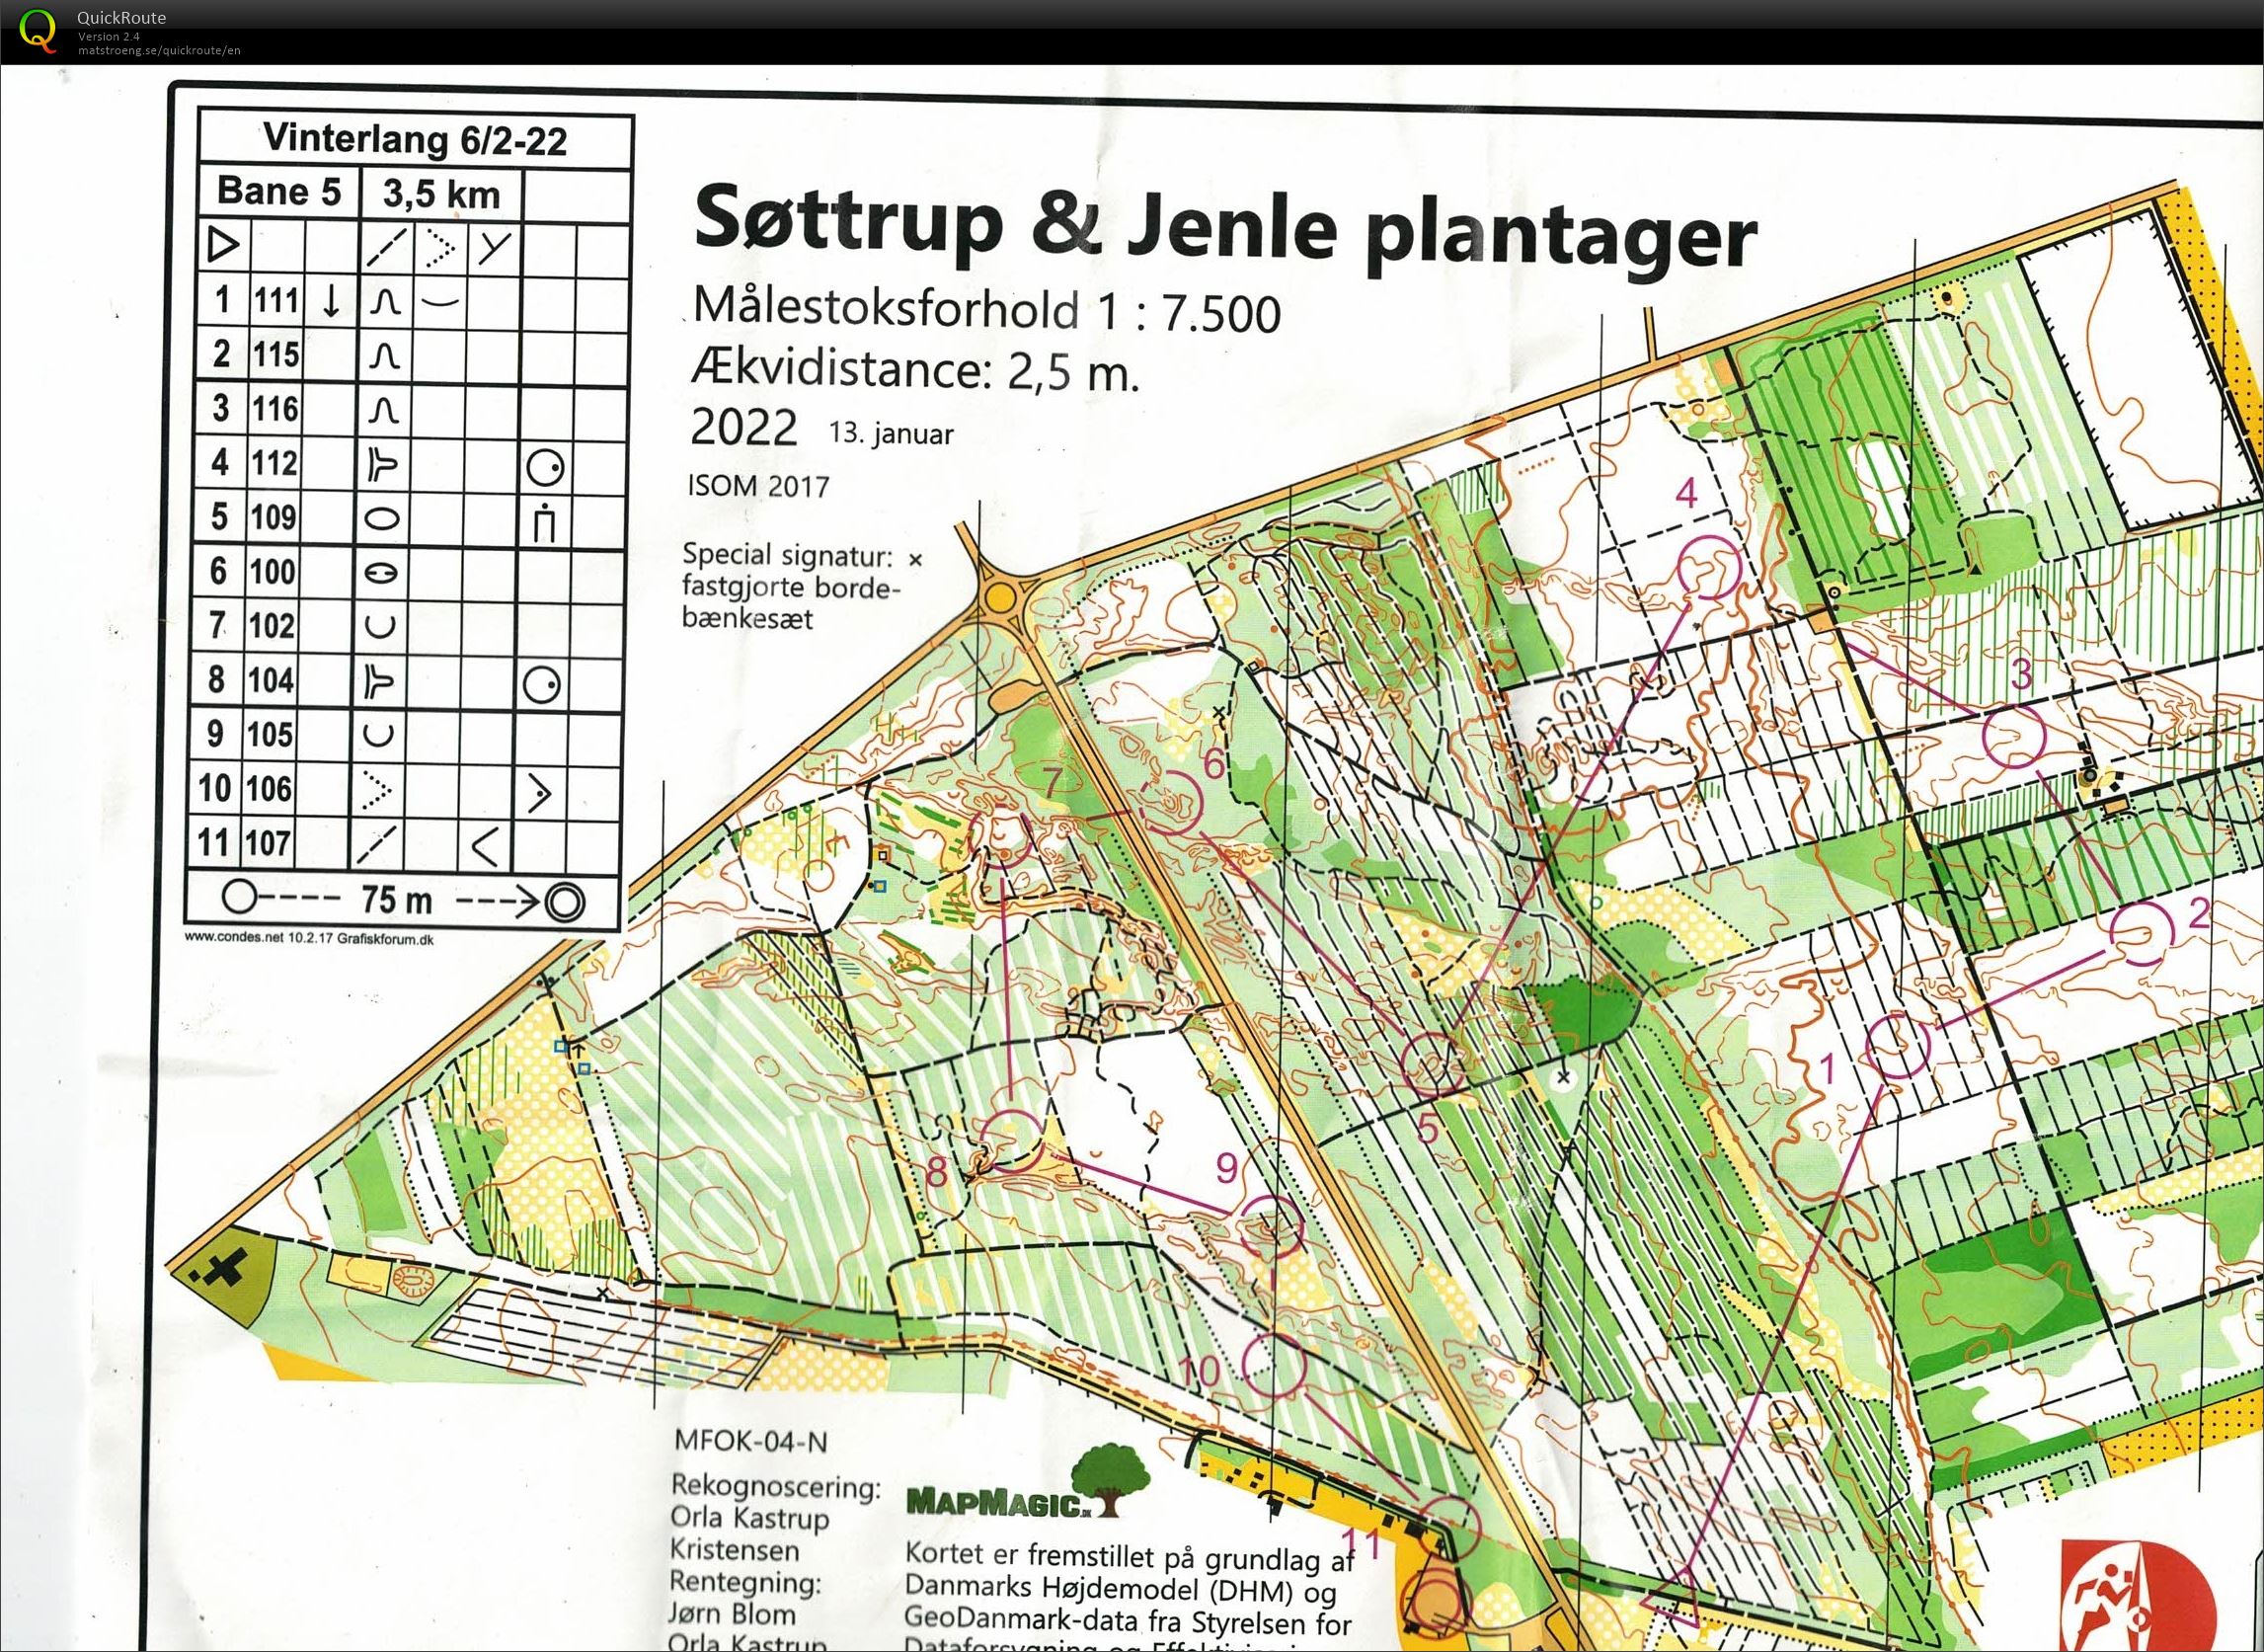 Søttrup Jenle Plantager, Vinterlang, Bane 5, Pia Gade, 060222 (06/02/2022)